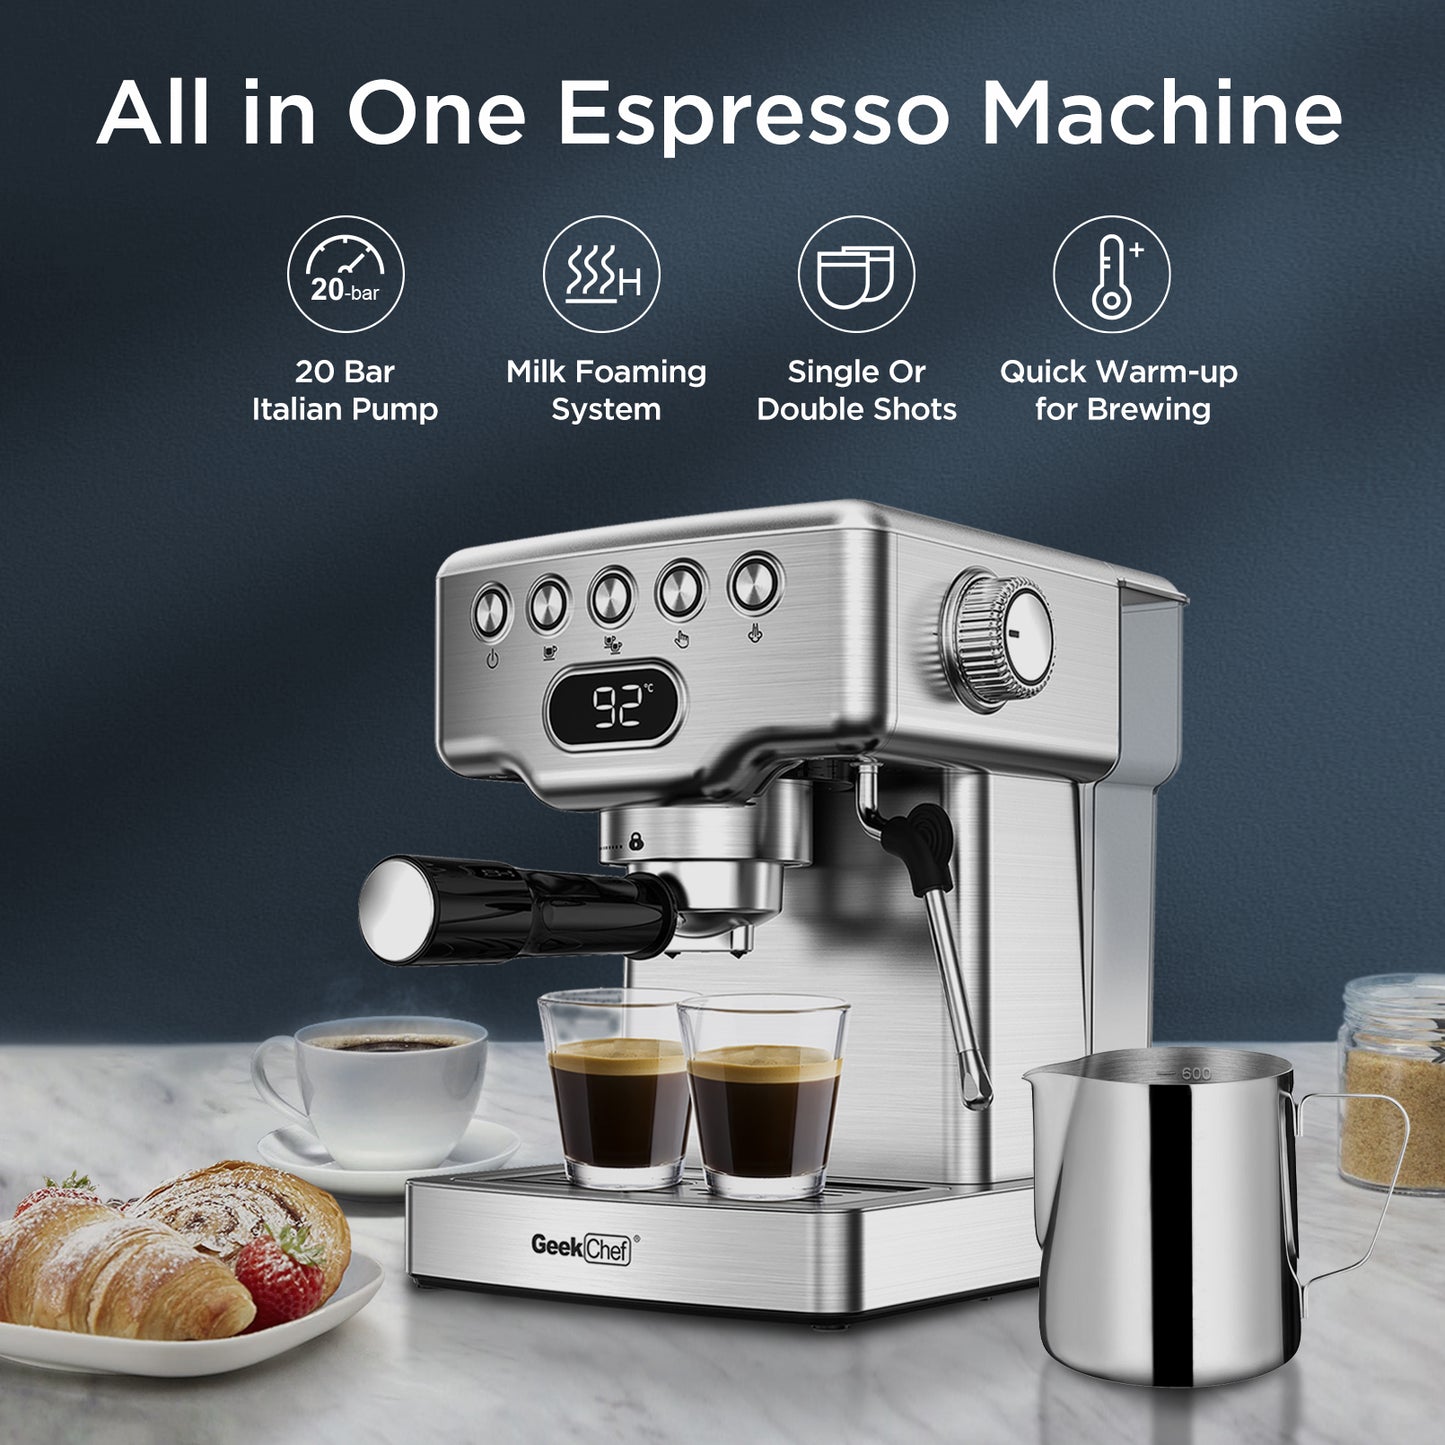 Espresso Machine, 20 Bar Espresso Machine With Milk Frothier For Latte, Cappuccino, Macchiato, For Home Espresso Maker, 1.8L Water Tank, Stainless Steel.